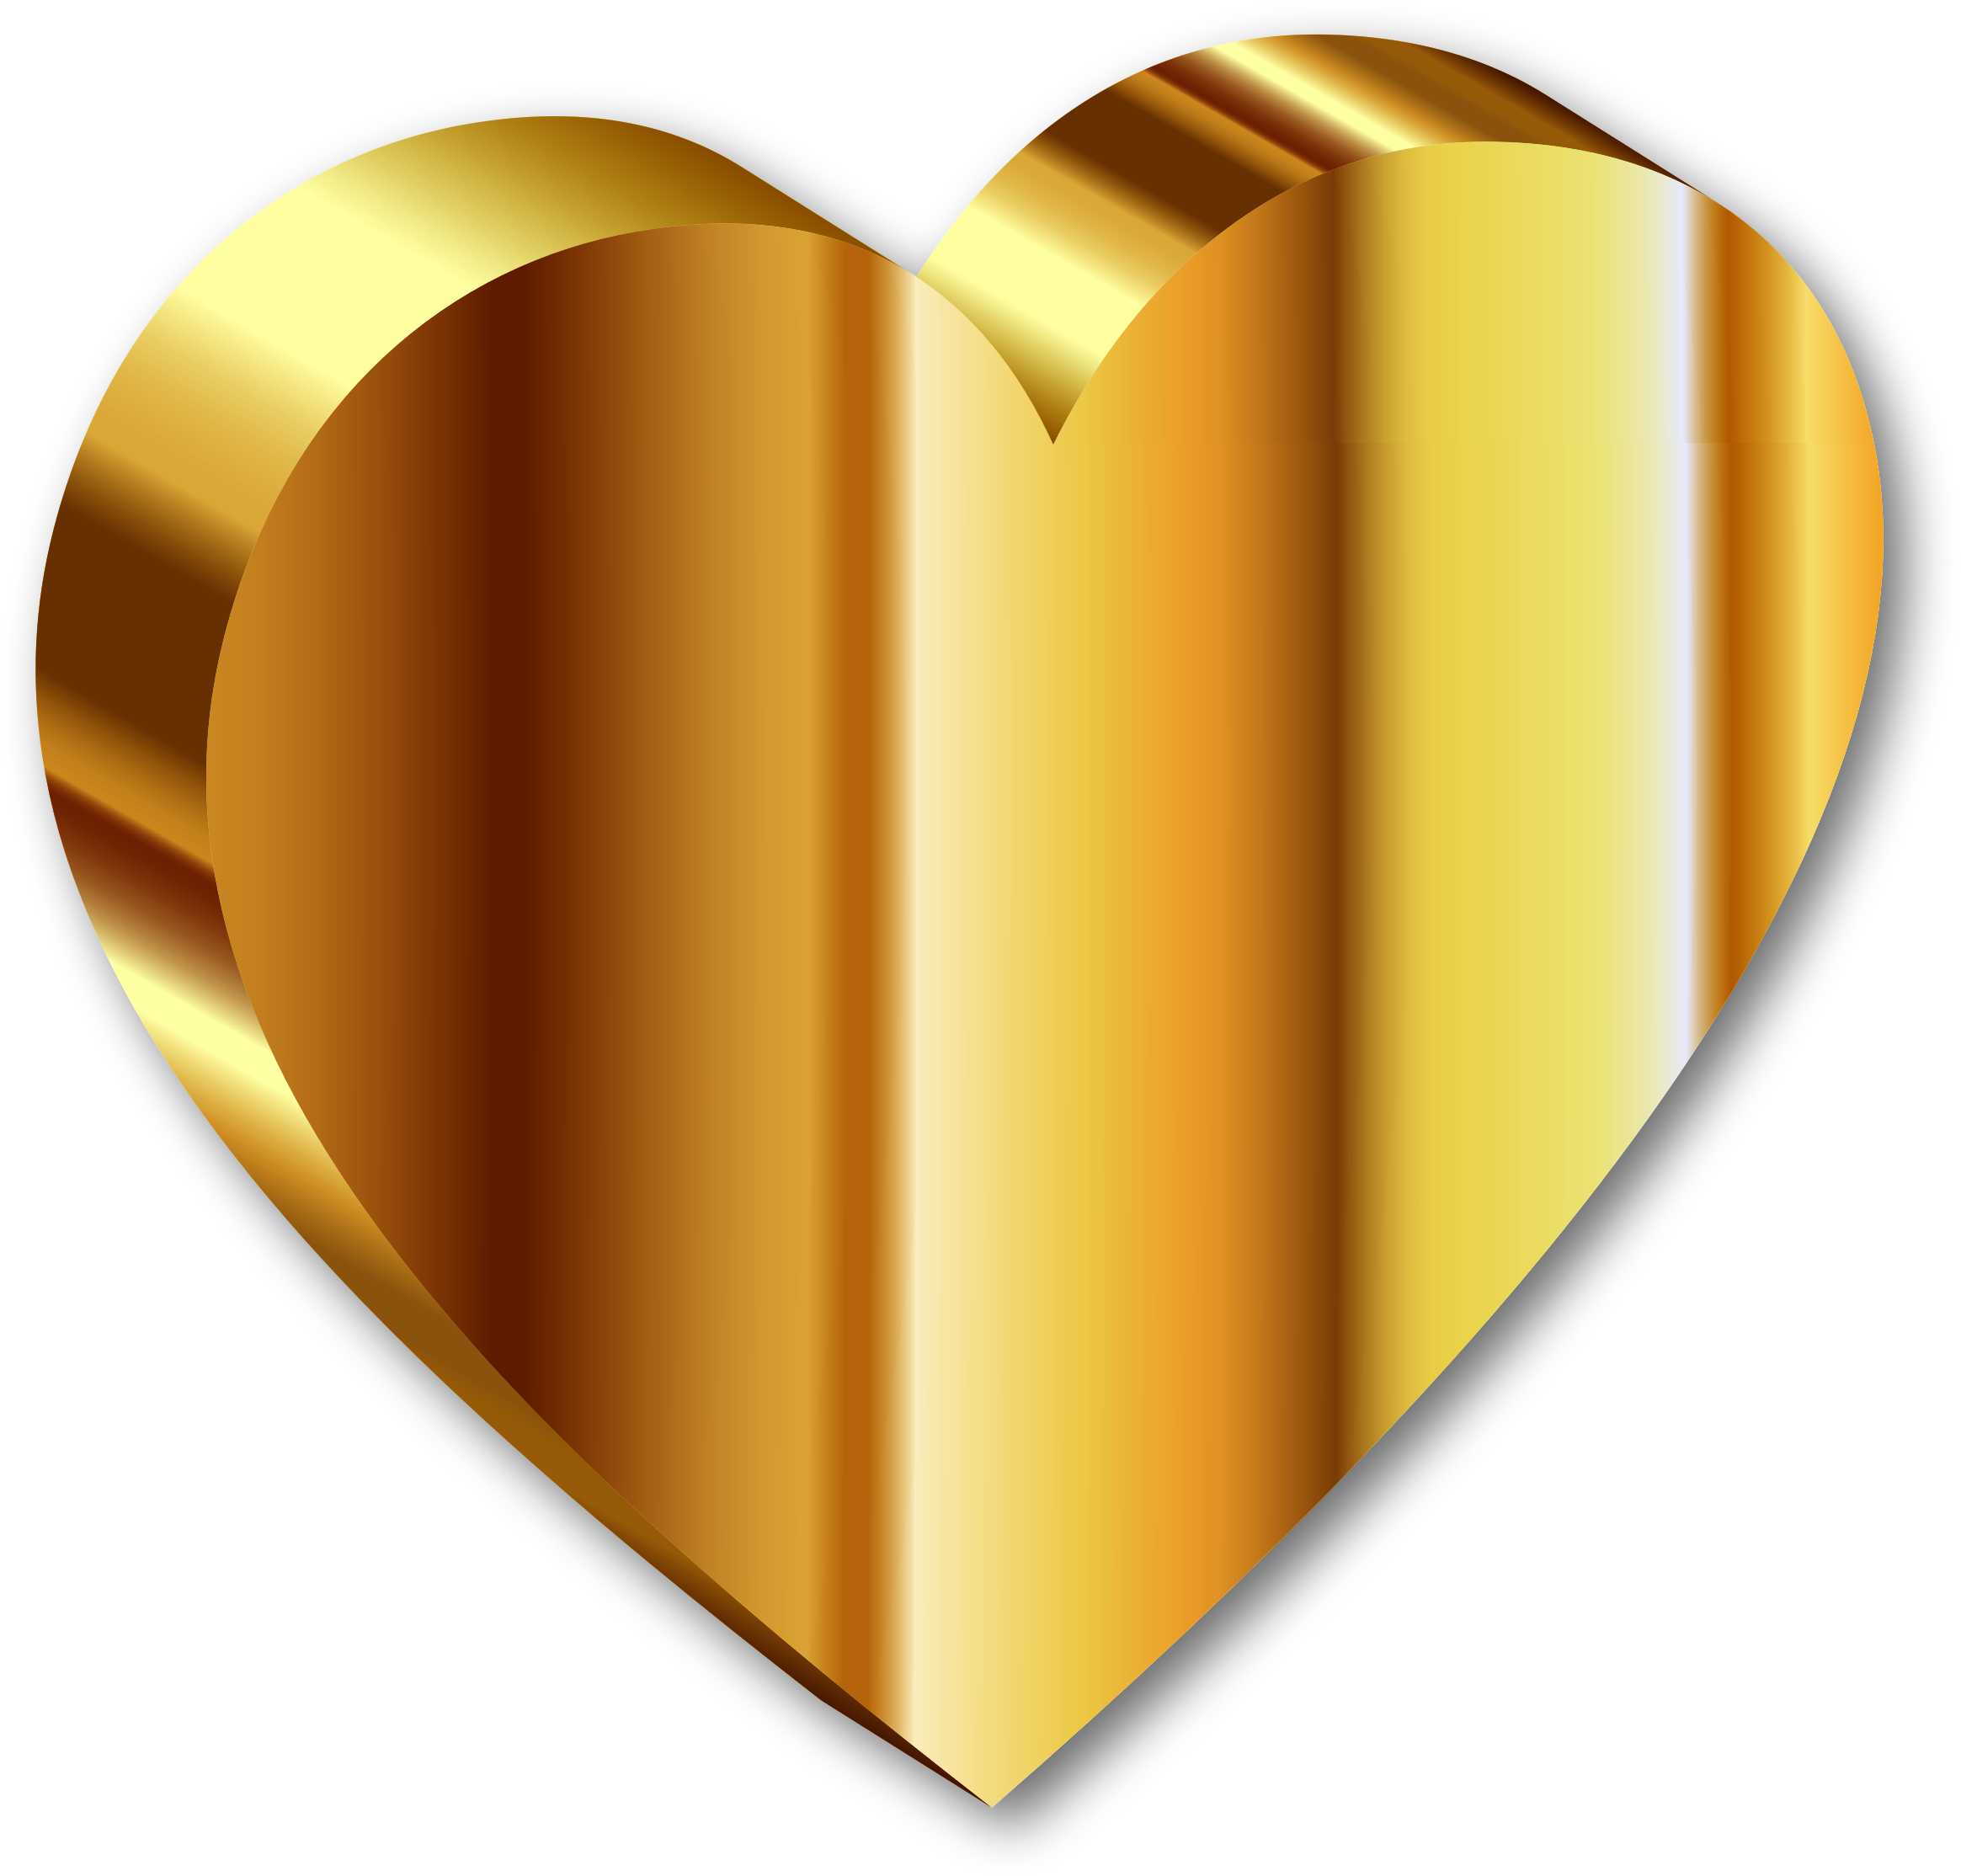 Abstract Imagen PNG del corazón dorado